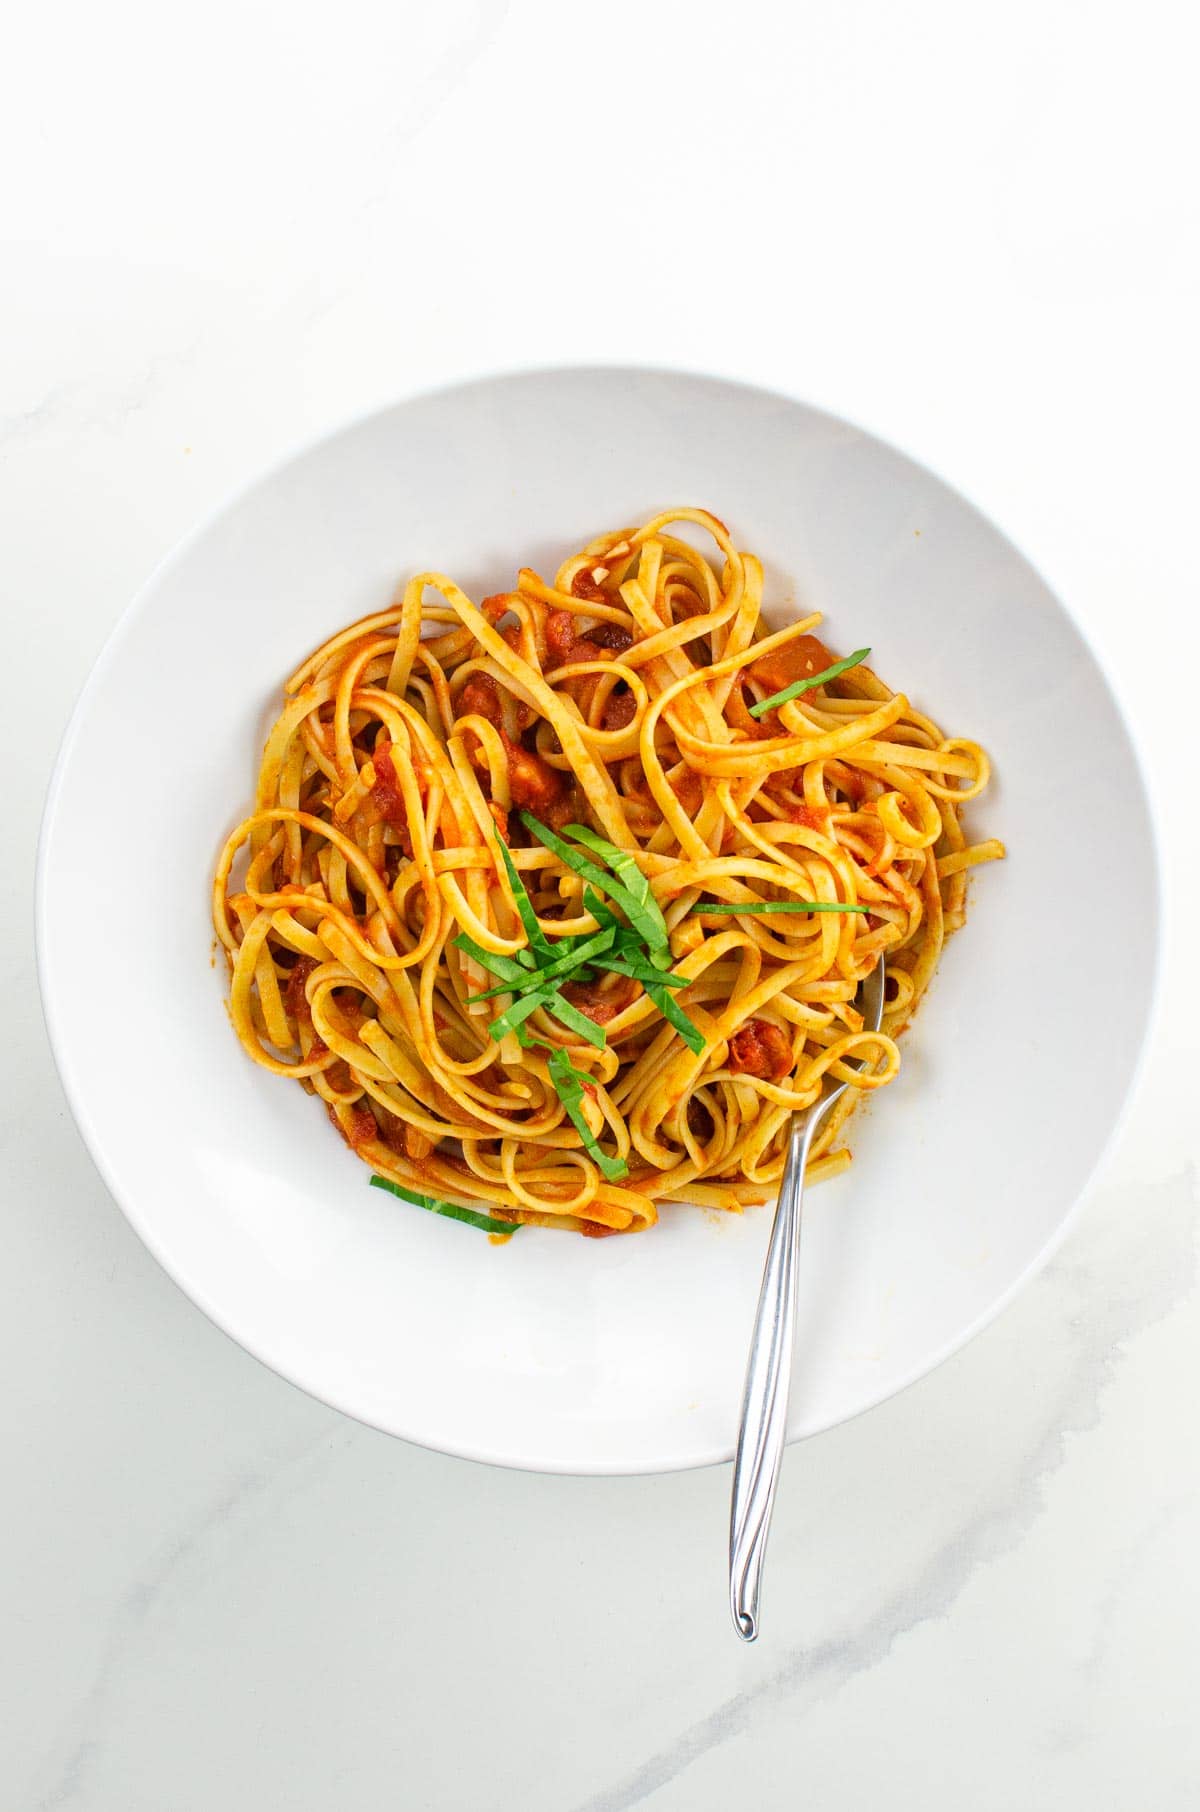 spaghetti al pomodoro in a white bowl (actually linguine)